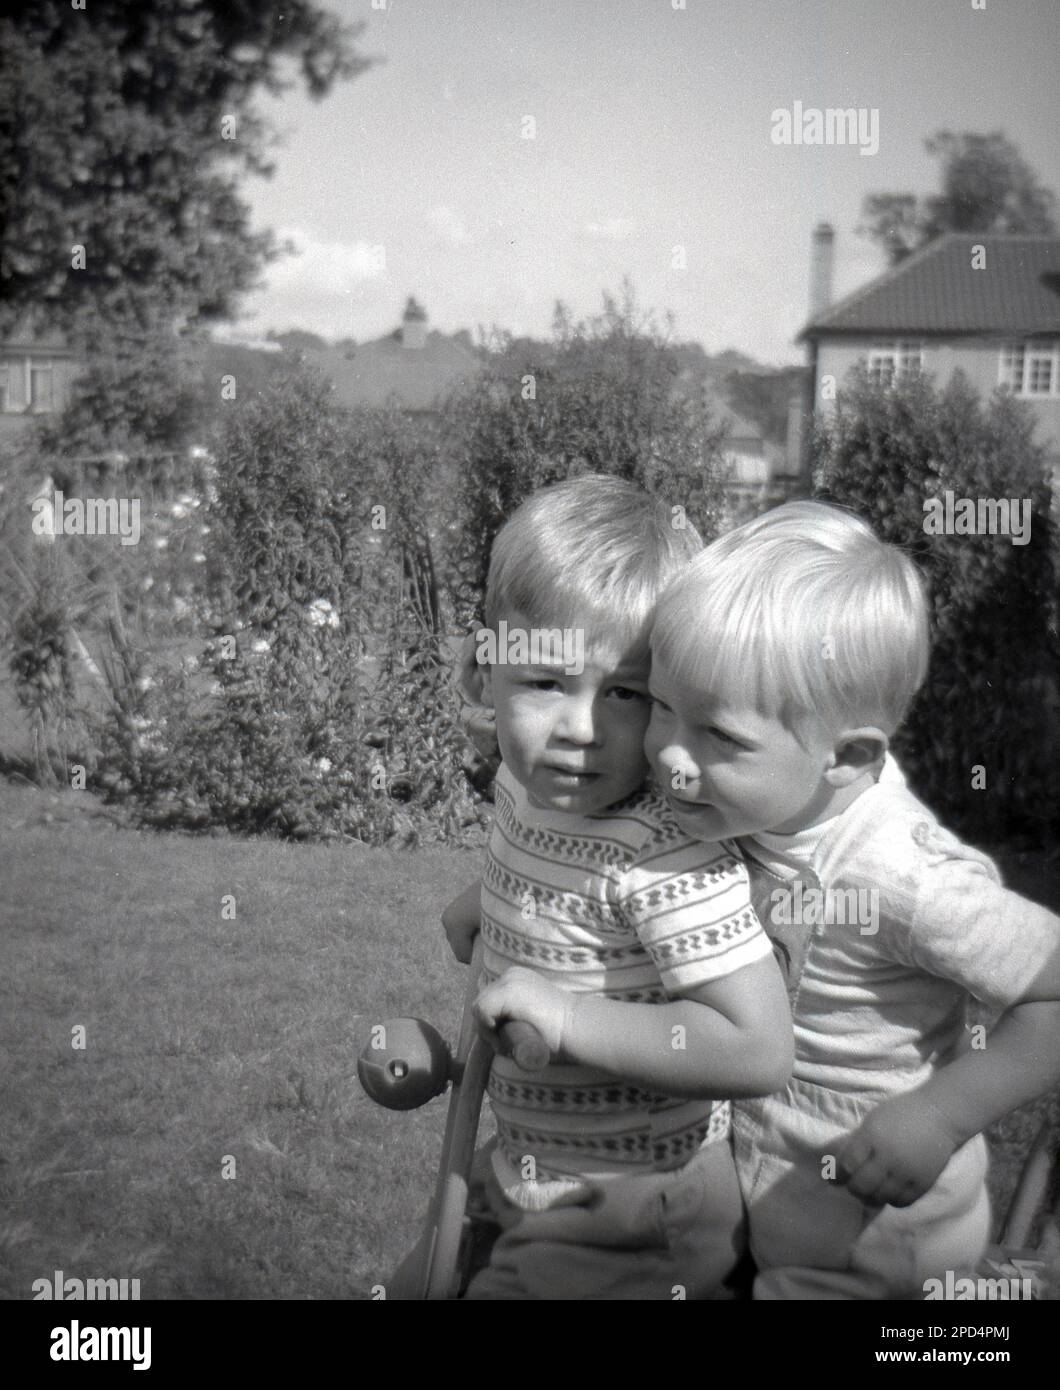 1964, historique, l'été, à l'extérieur dans un jardin, deux petits garçons blonds aux cheveux assis ensemble sur un tricycle d'enfant, Angleterre, Royaume-Uni. Banque D'Images